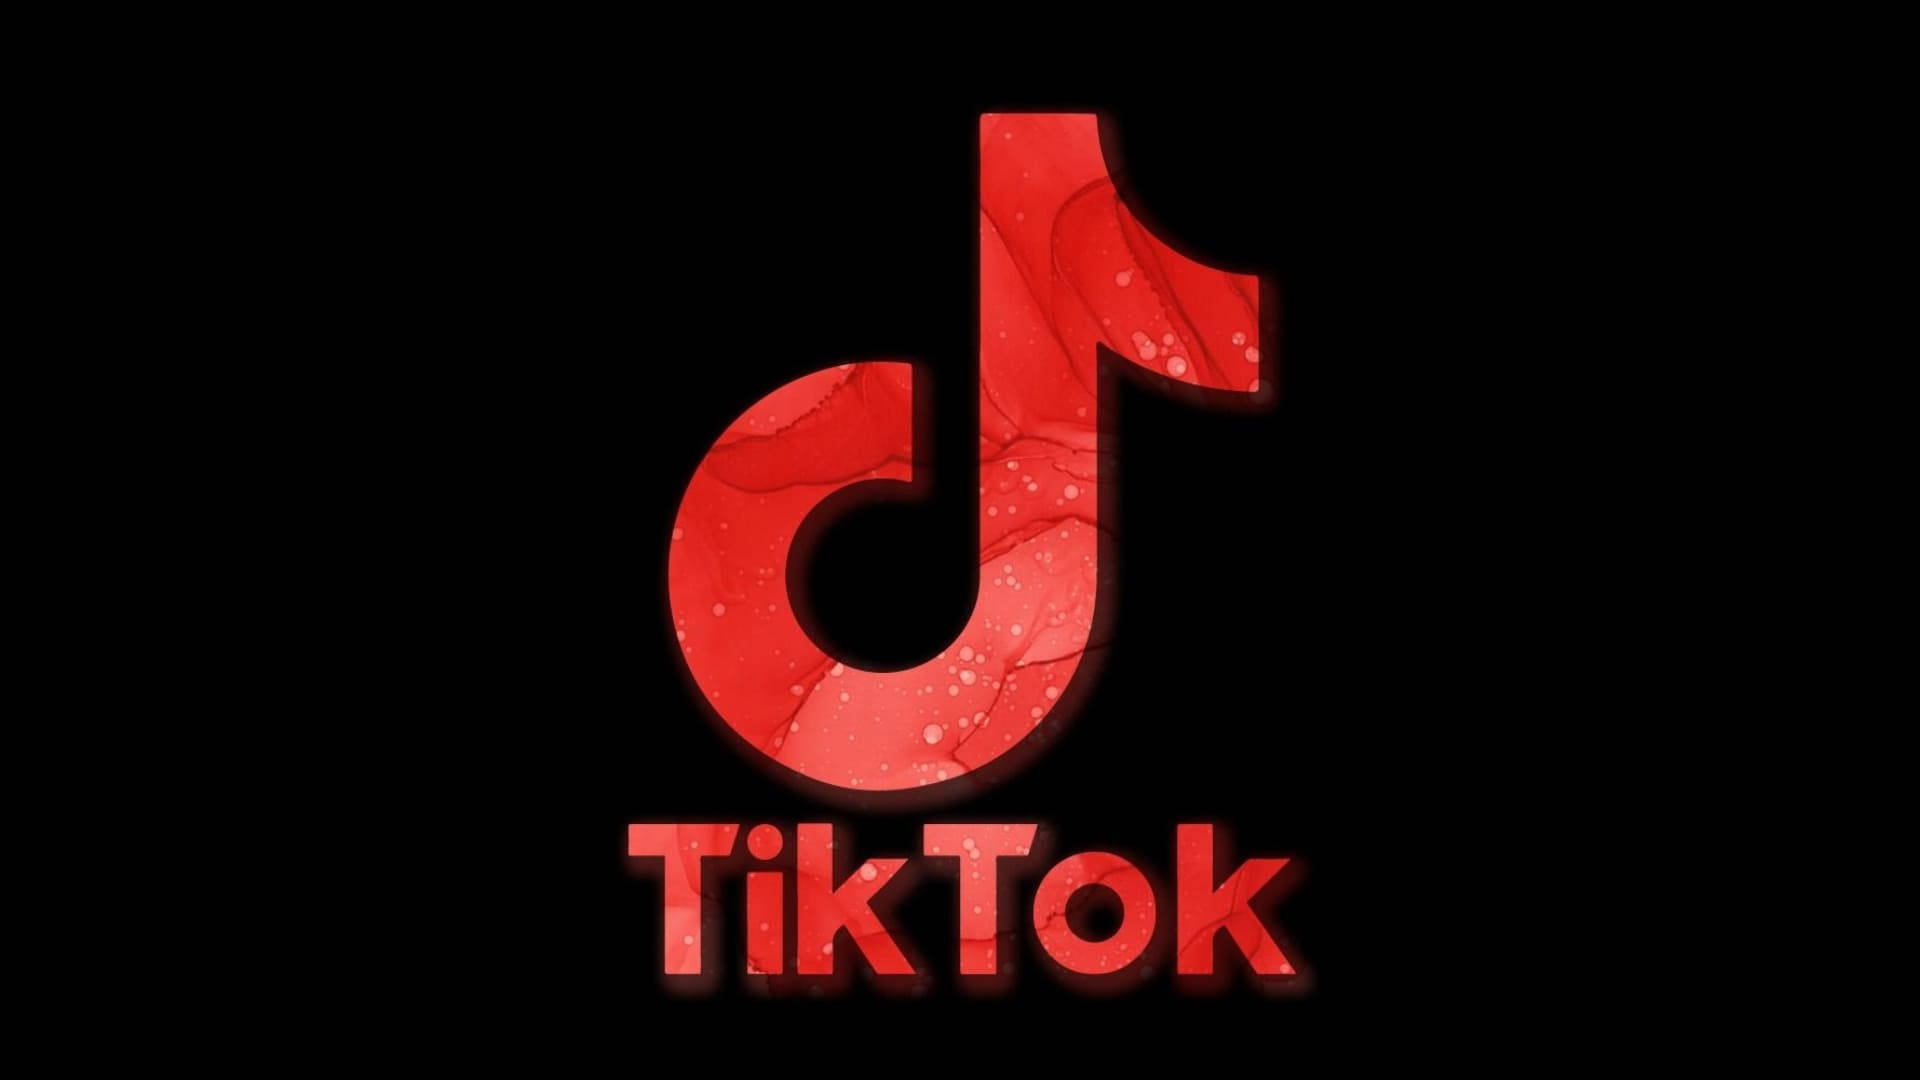 Red Aesthetic TikTok Logo Wallpaper